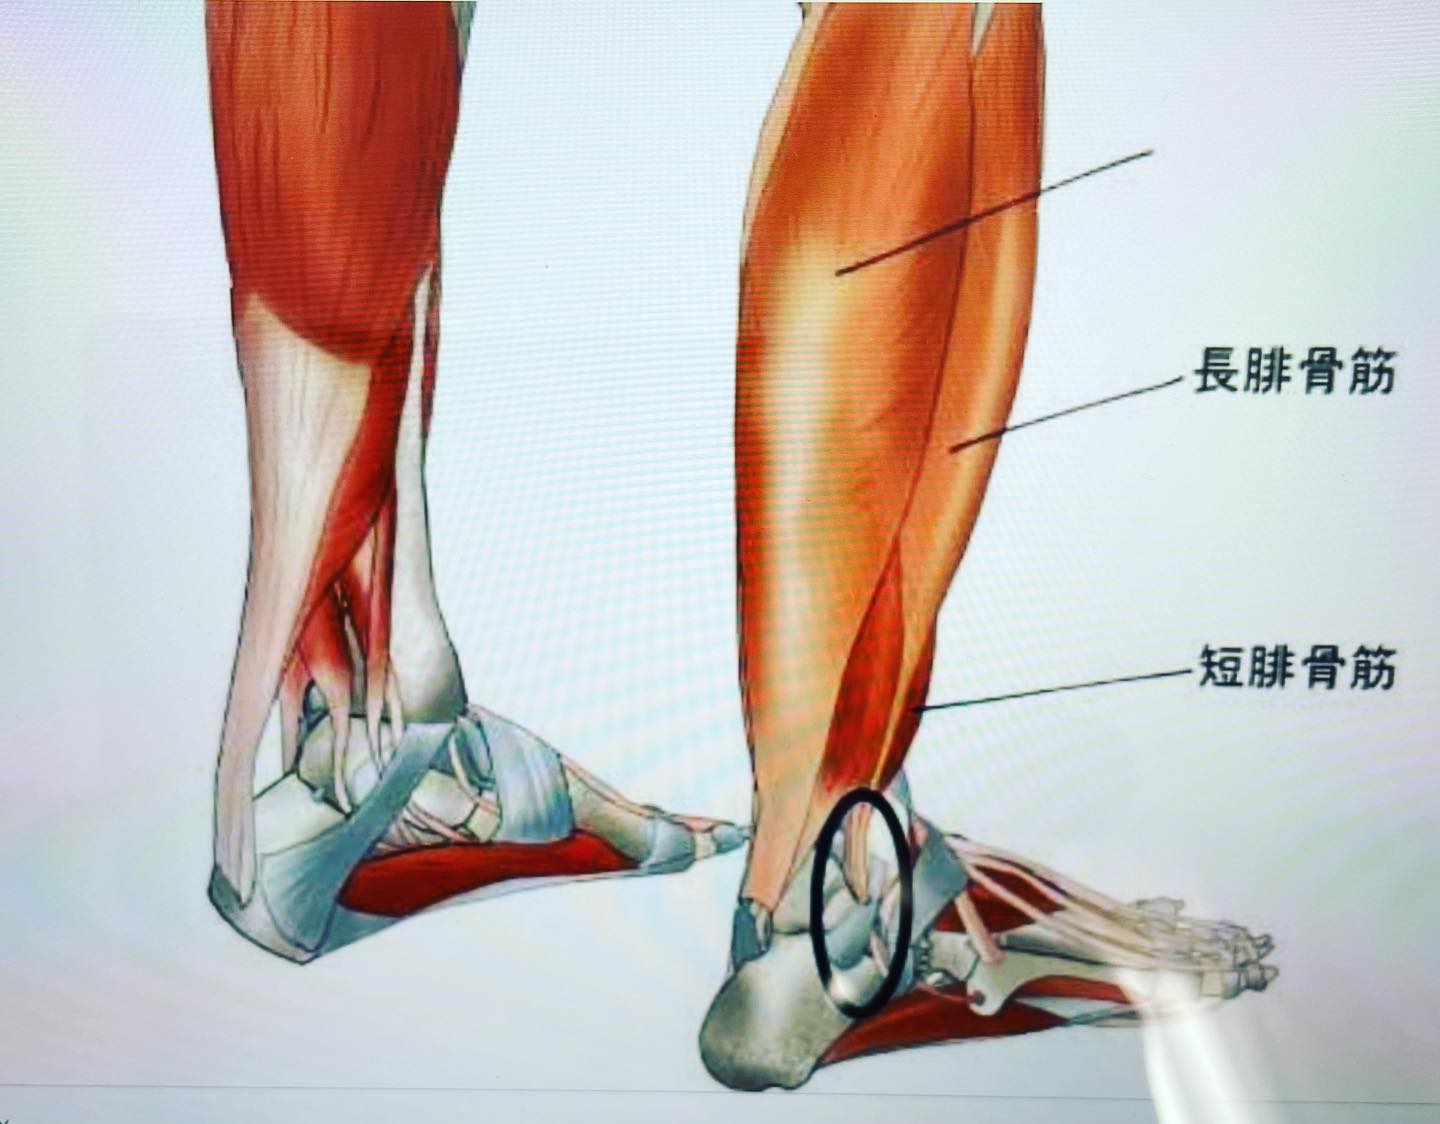 #足首トレーニング 膝下内側の筋肉は後脛骨筋、外側の筋肉は腓骨筋です。内側の筋肉が弱くなると外反母趾になりやすい。外側の筋肉が弱くなると、足首やかかとが痛くなる。トレーニングは、膝を曲げる　　足首をまっすぐ伸ばす　　足指をぎゅっと握る　　そのままで足先を内側、外側に10秒づつむける。